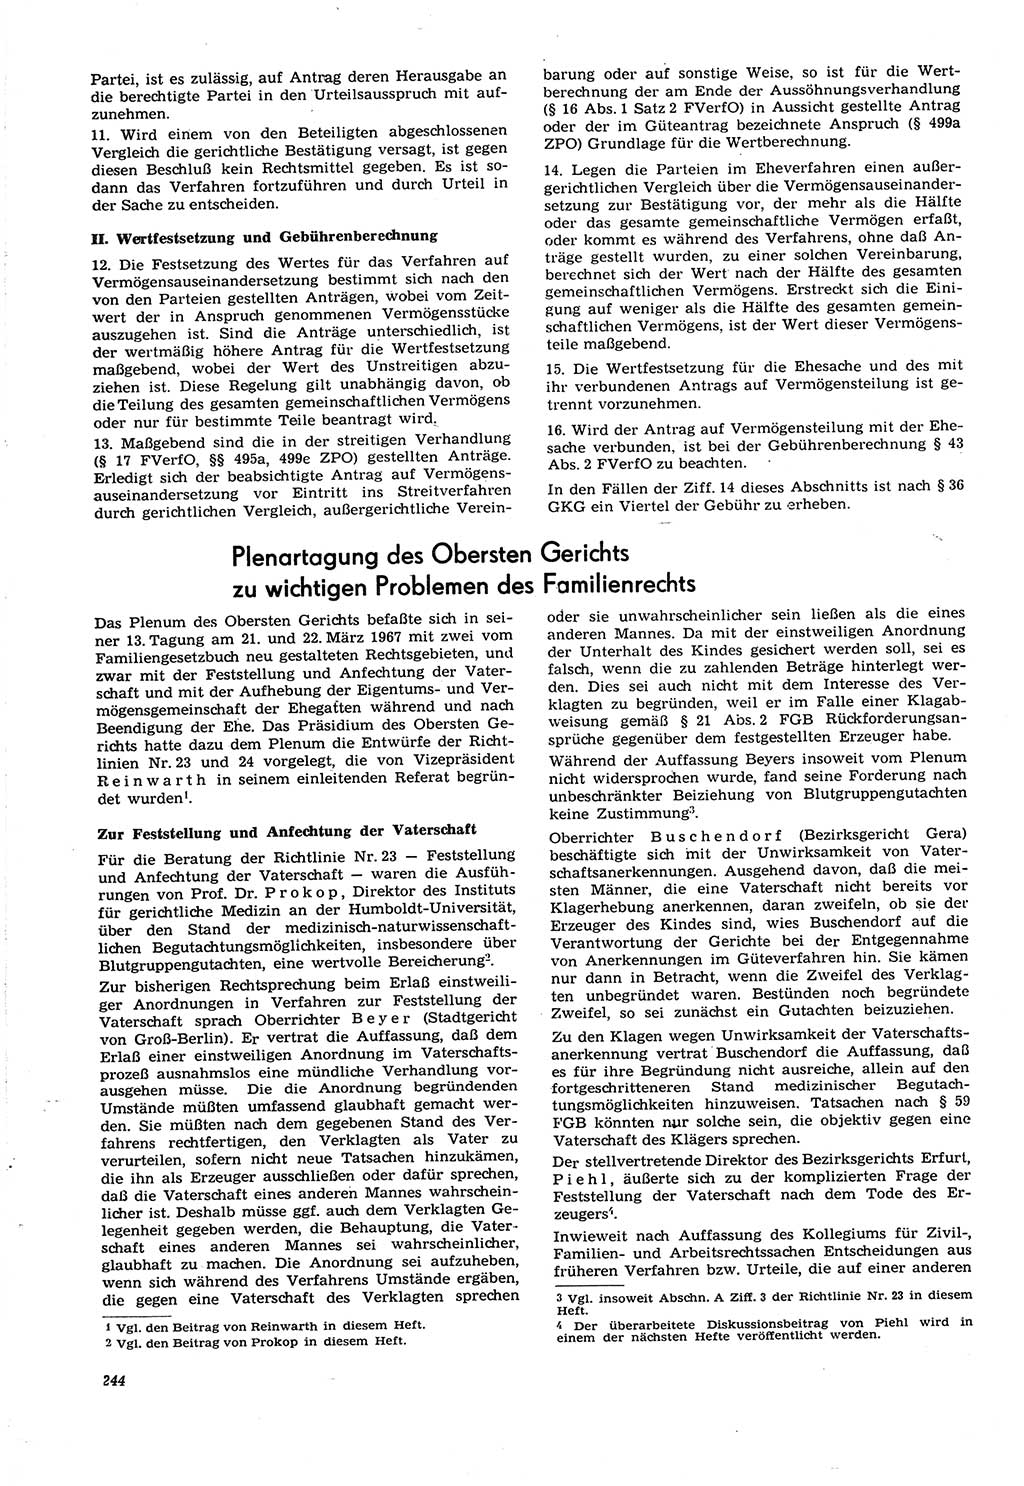 Neue Justiz (NJ), Zeitschrift für Recht und Rechtswissenschaft [Deutsche Demokratische Republik (DDR)], 21. Jahrgang 1967, Seite 244 (NJ DDR 1967, S. 244)